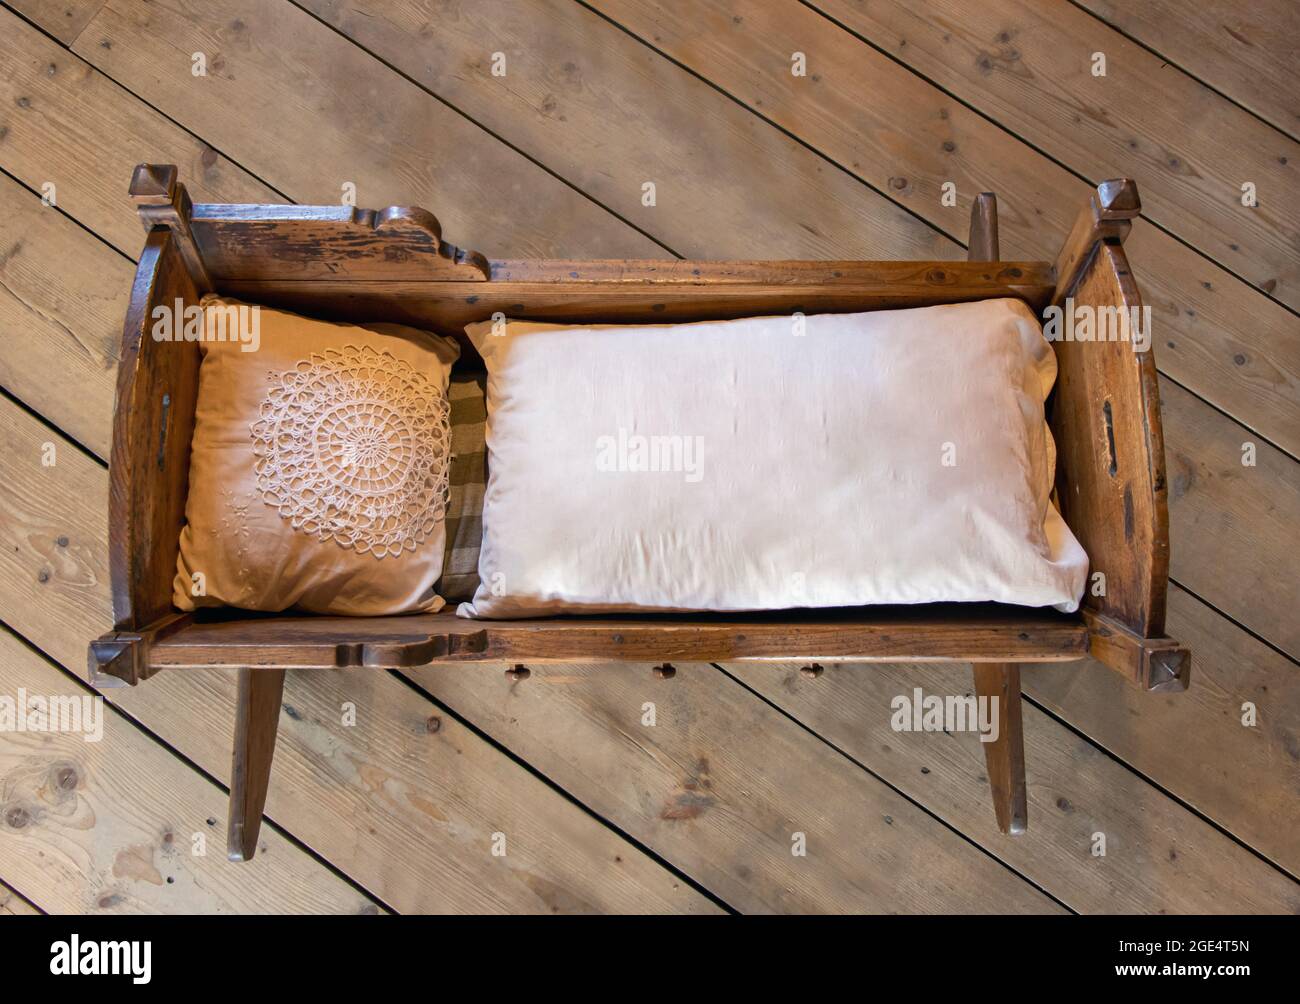 Alte Wiege mit Bettdecke und Kissen auf dem Holzboden Stockfotografie -  Alamy